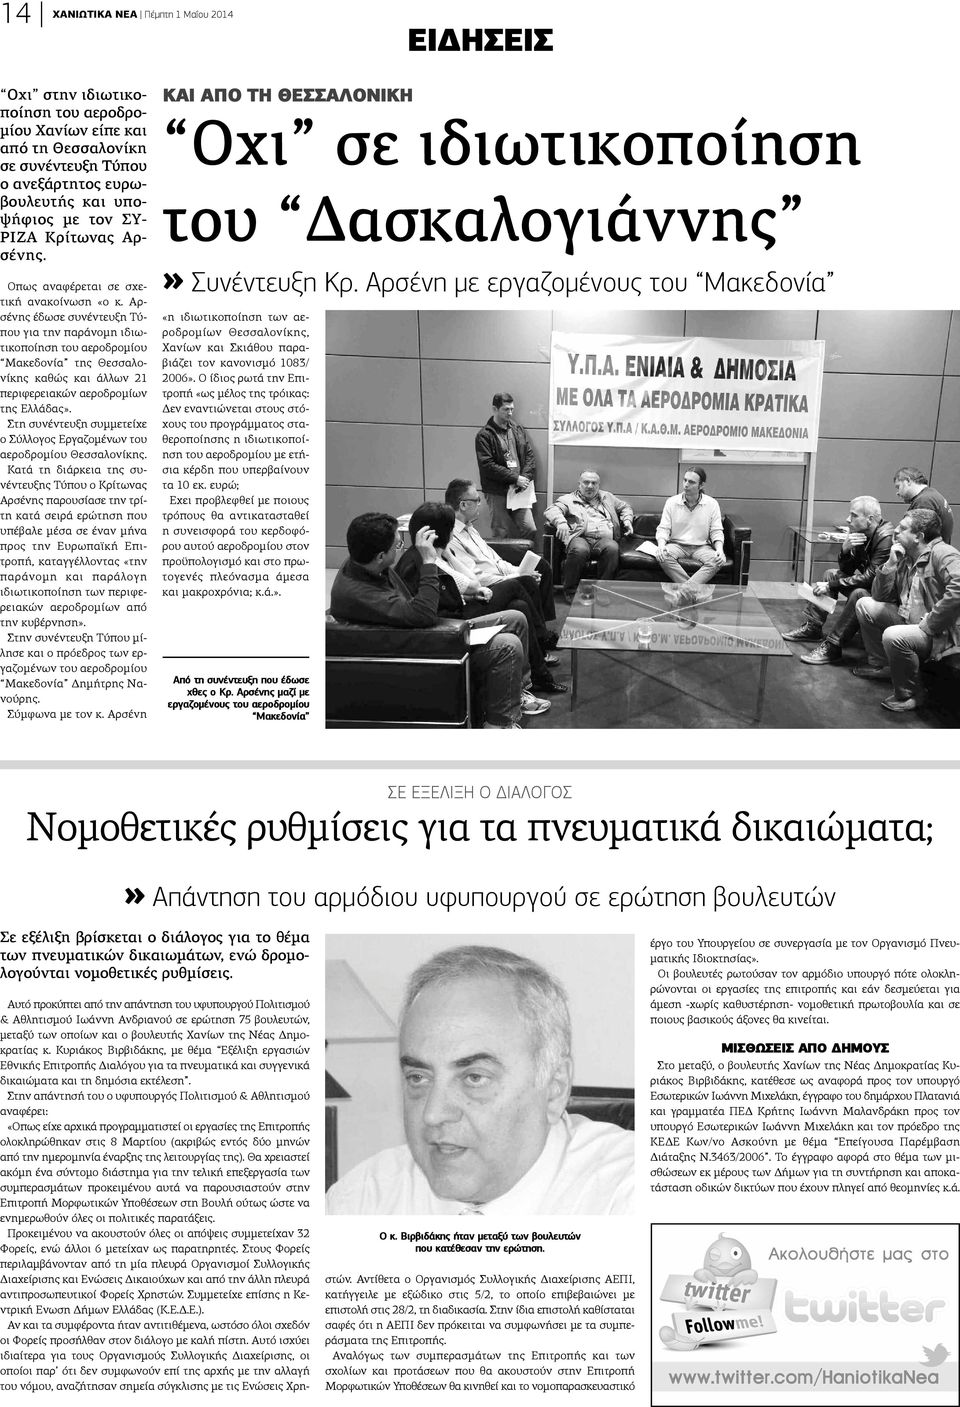 Αρσένης έδωσε συνέντευξη Τύπου για την παράνομη ιδιωτικοποίηση του αεροδρομίου Μακεδονία της Θεσσαλονίκης καθώς και άλλων 21 περιφερειακών αεροδρομίων της Ελλάδας».